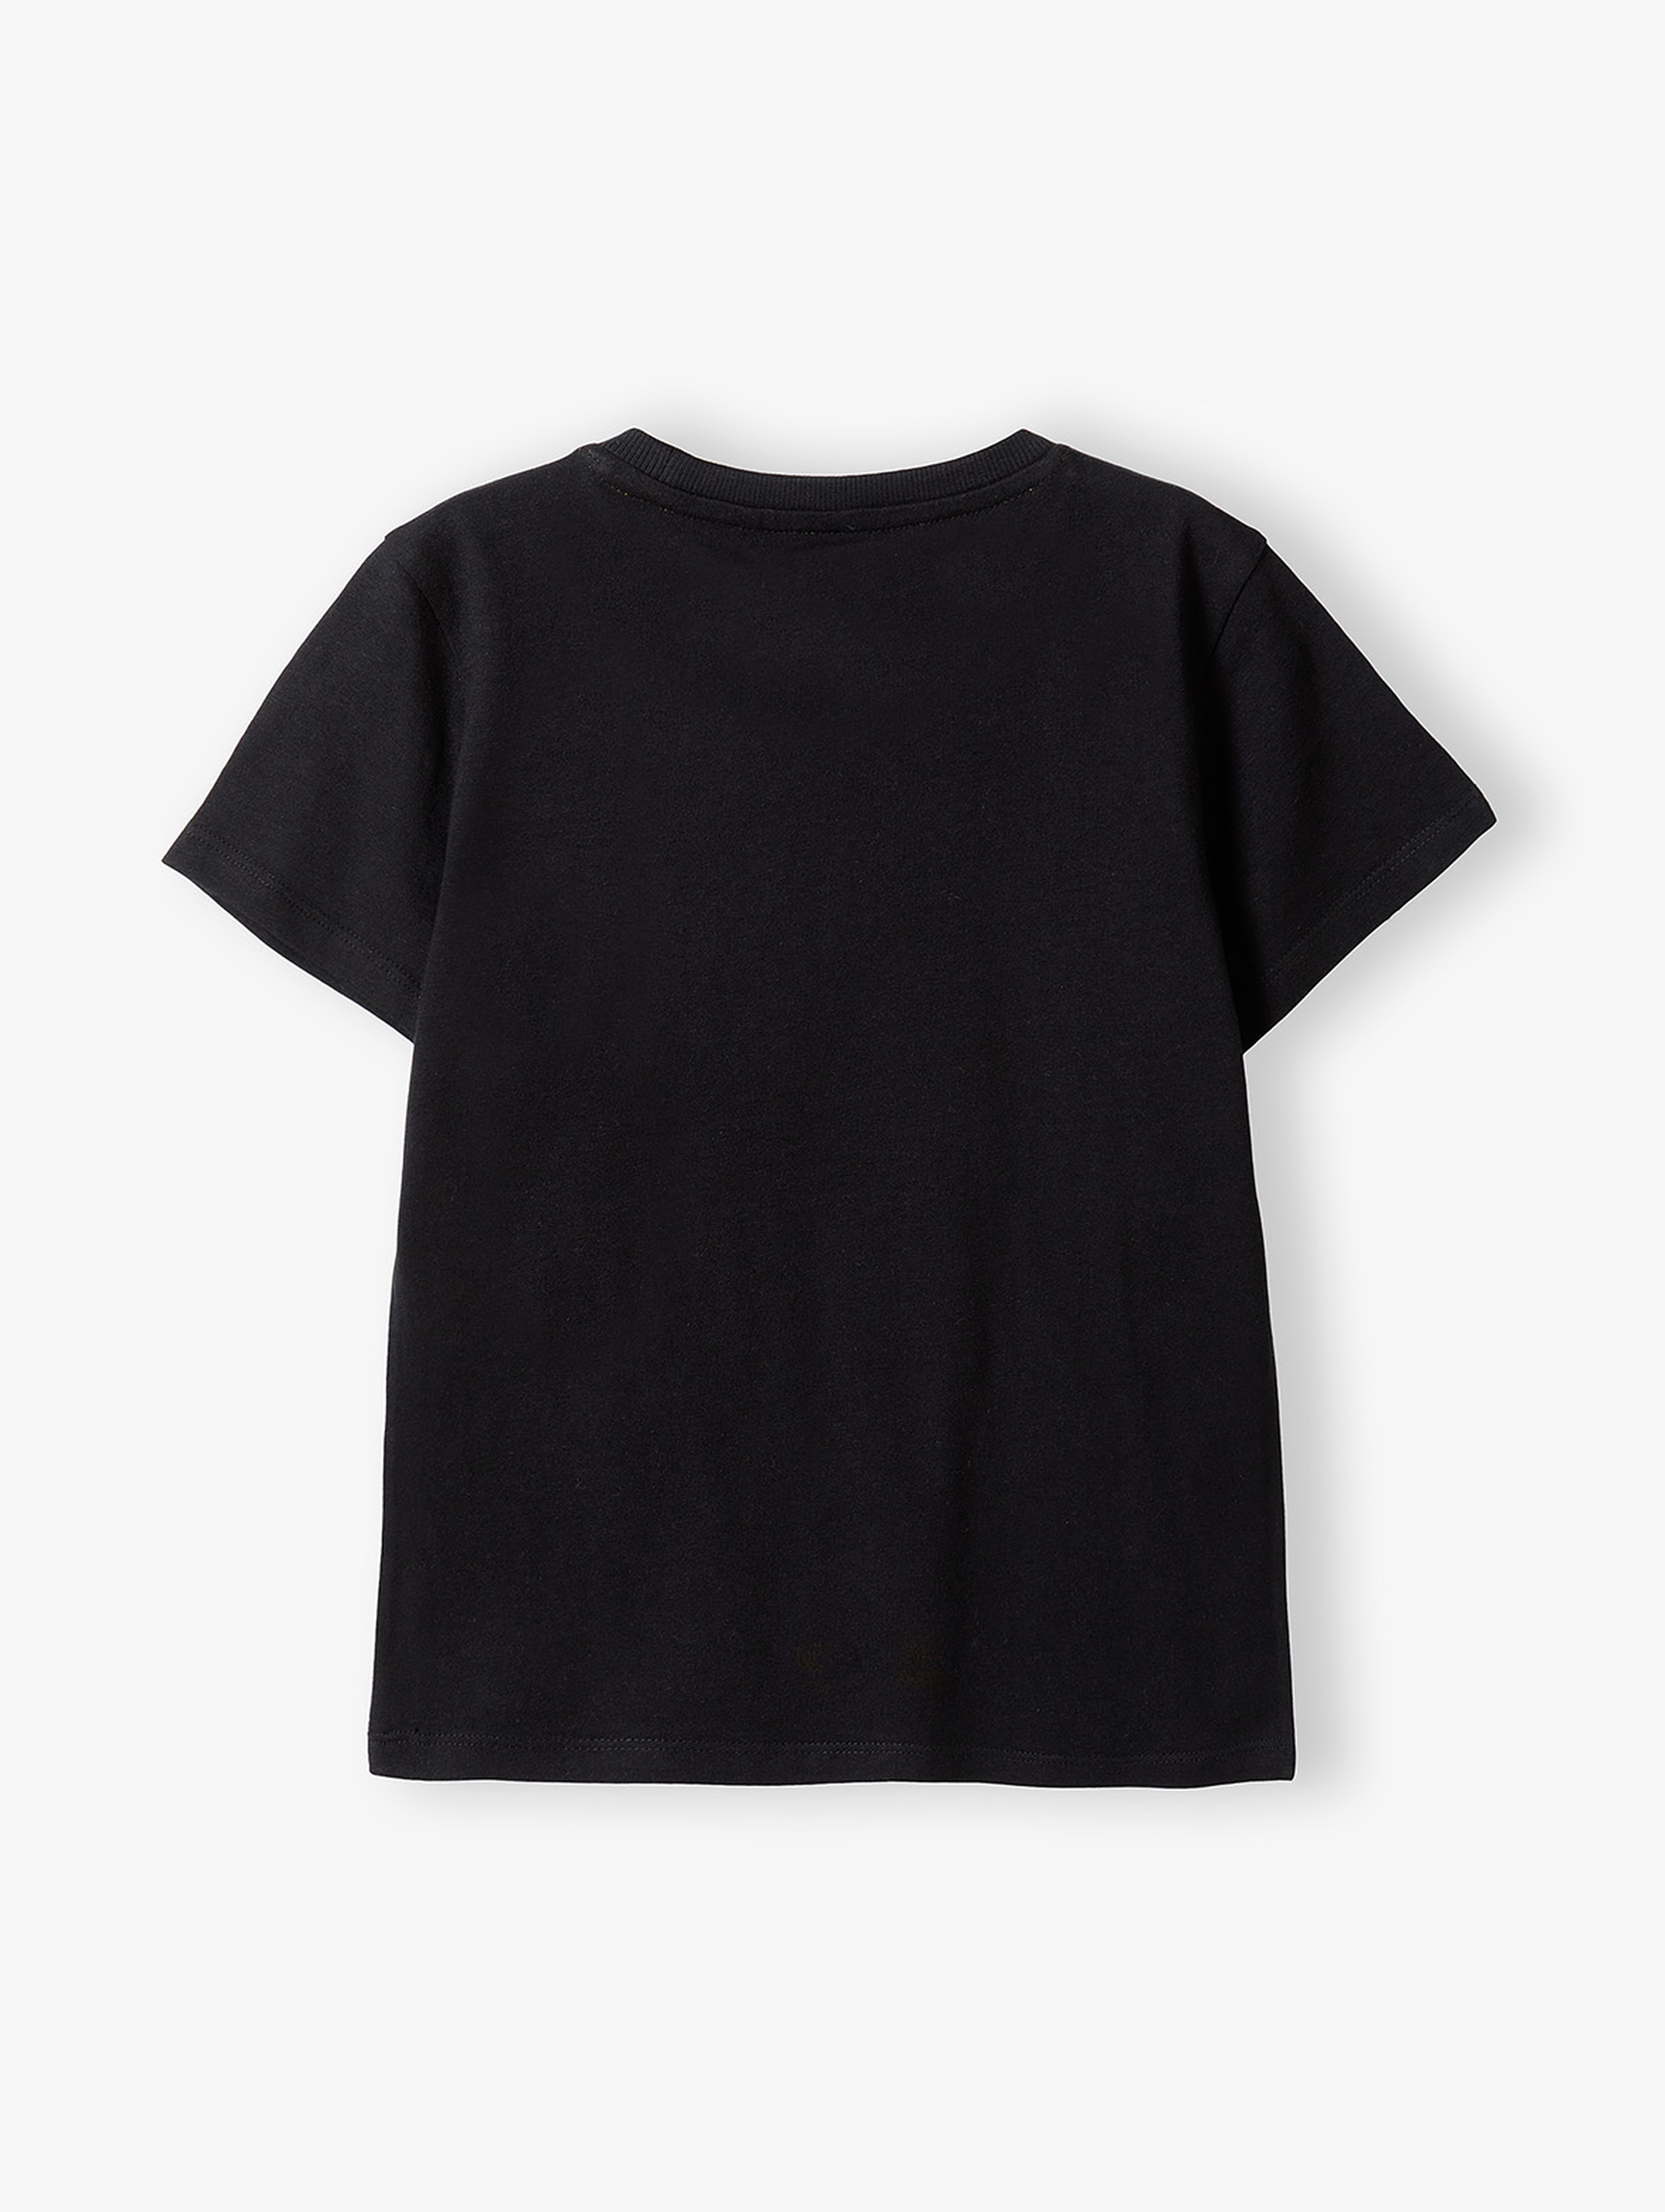 Czarny t-shirt dla chłopca bawełniany z pieskiem